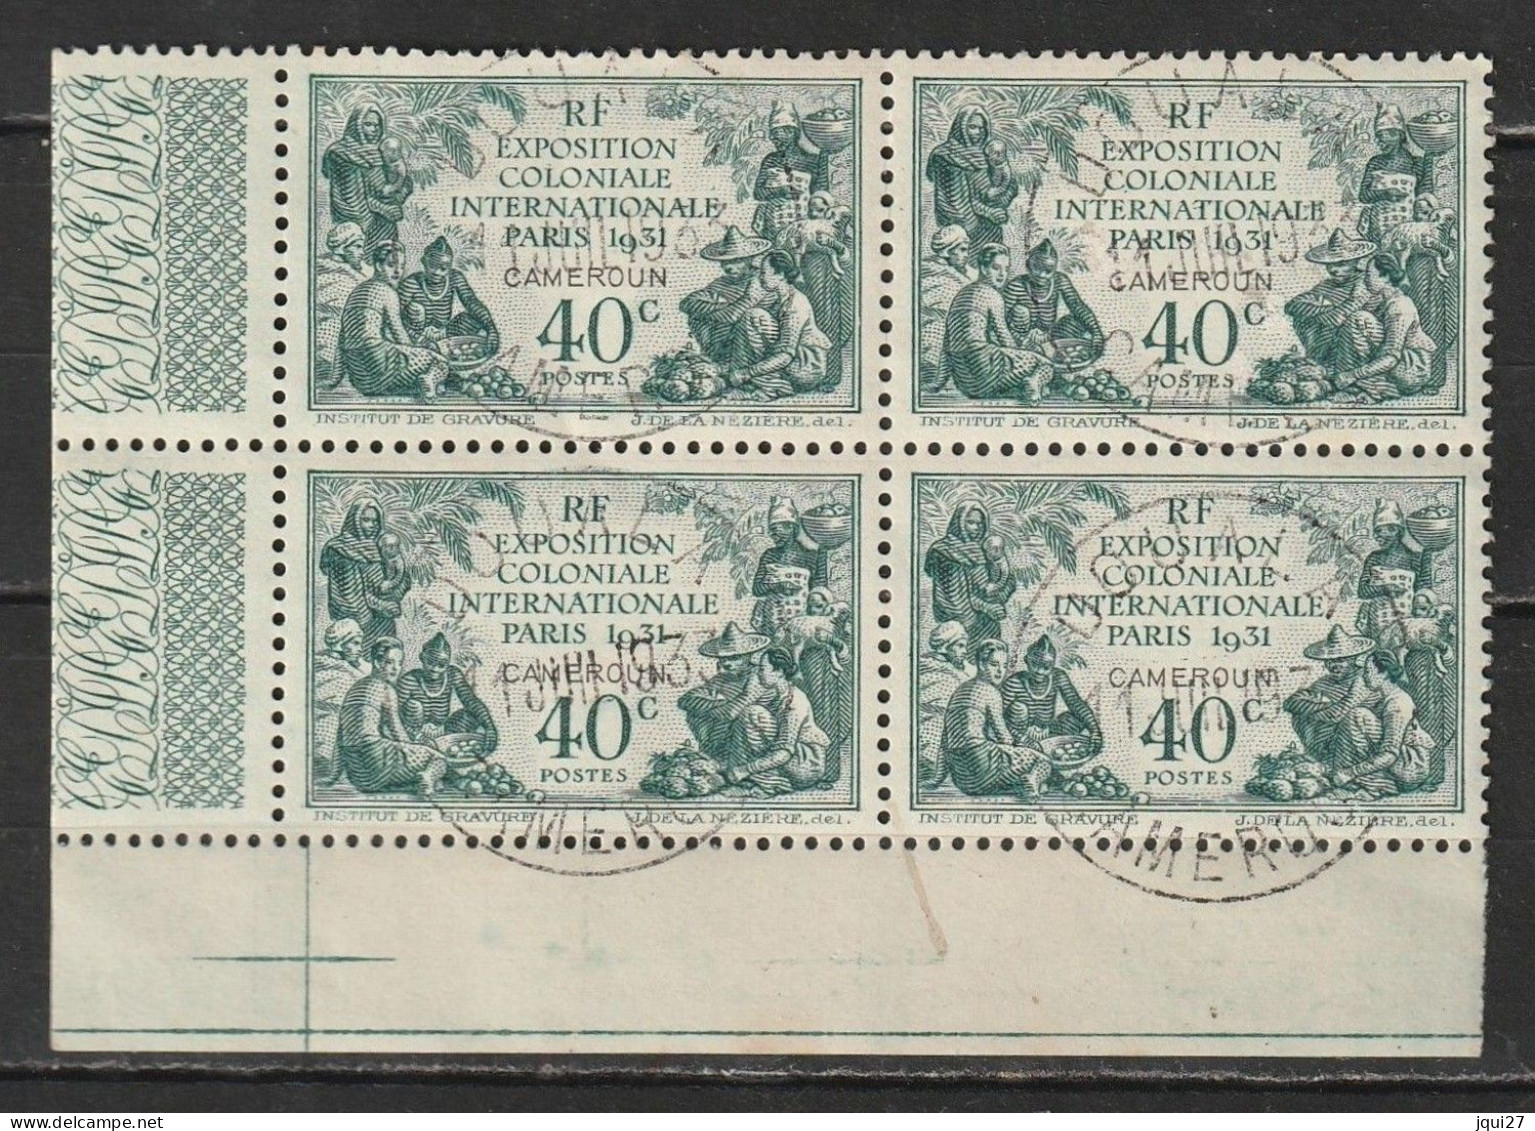 Cameroun N° 149 Oblitération Douala 11 JUIL 1931 Exposition Coloniale De Paris 1931 - Usati